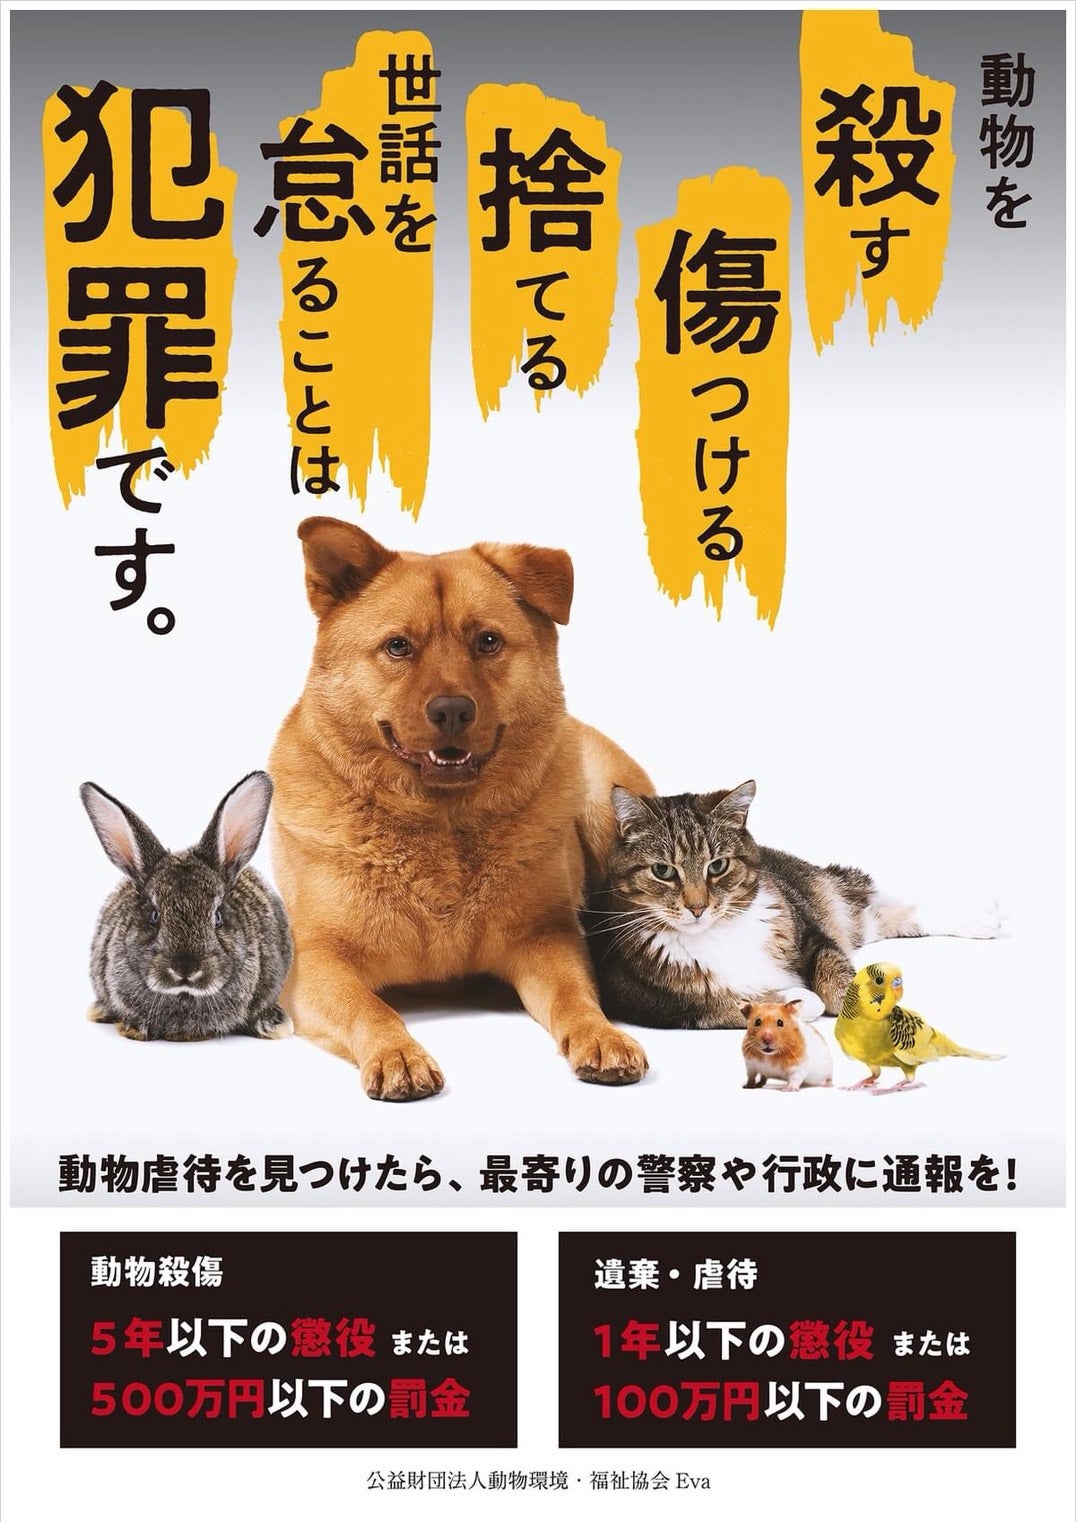 動物愛護法 rintarou12001のブログ